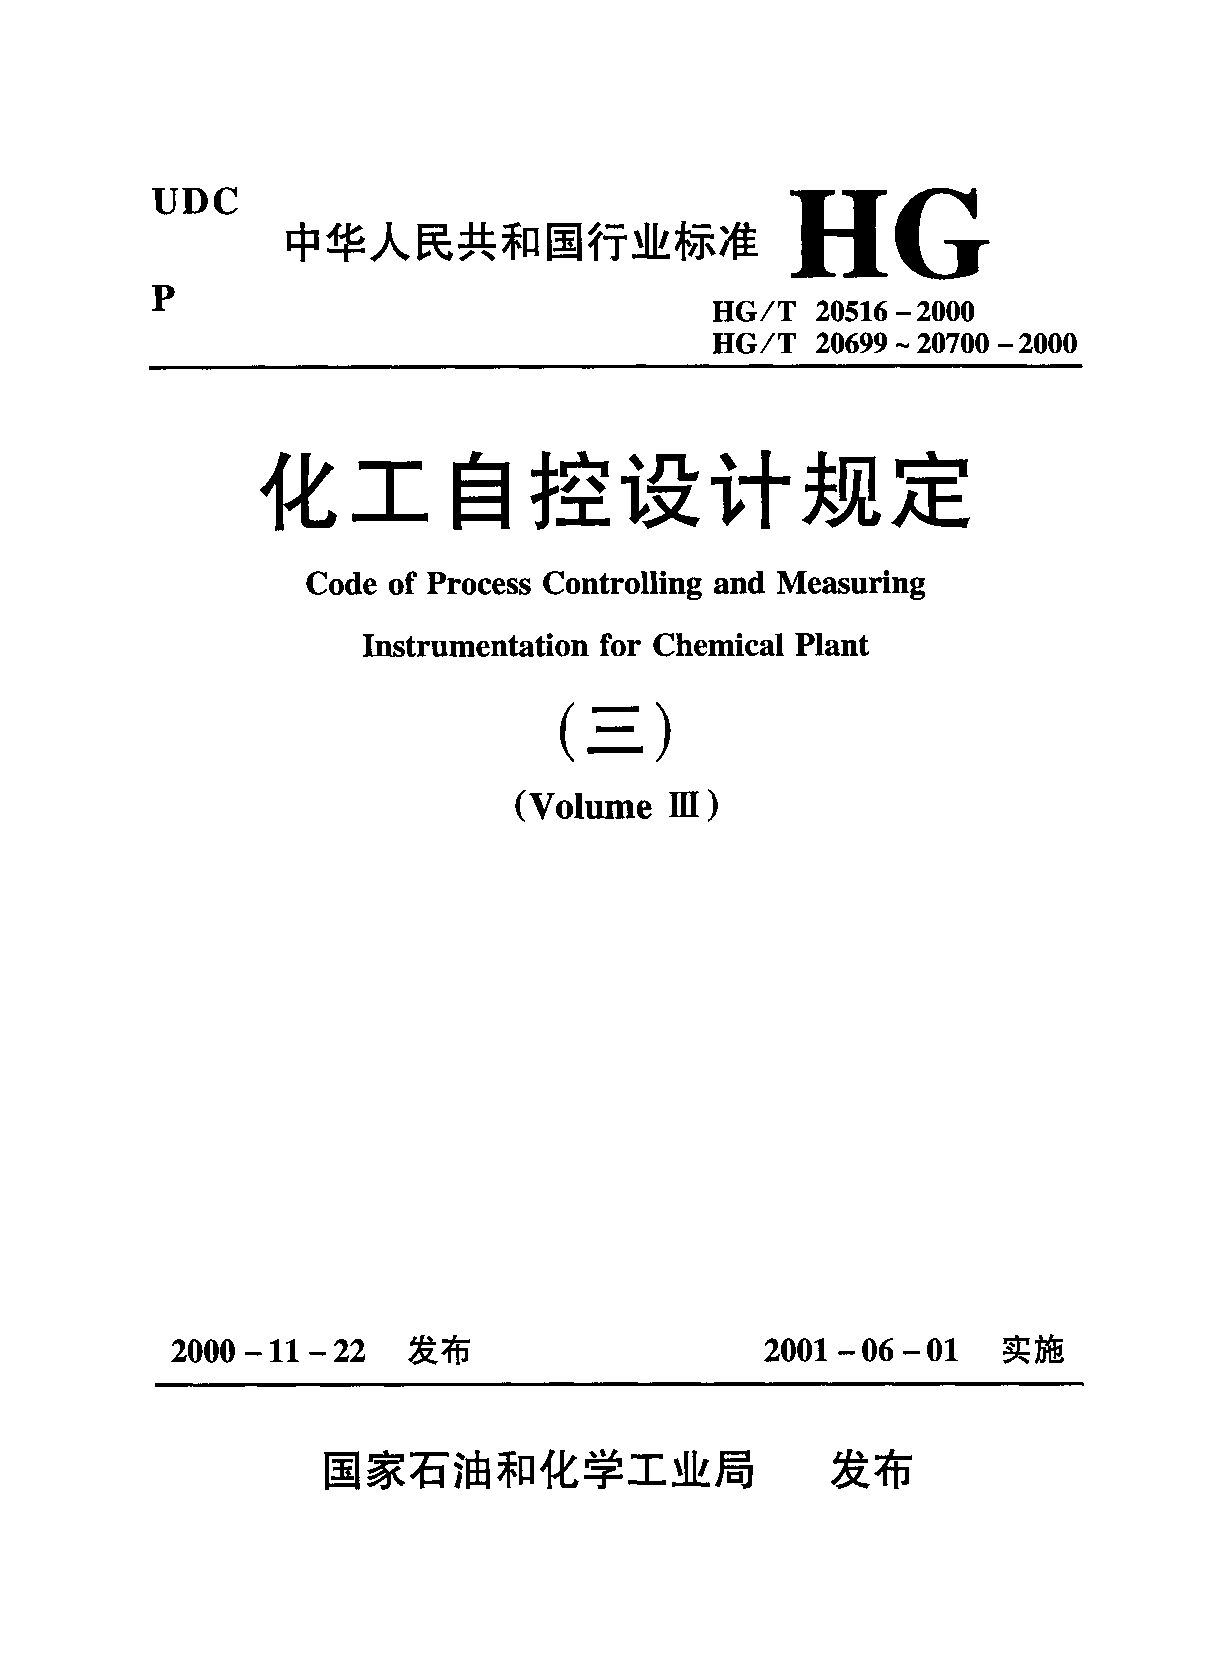 HG/T 20699-2000封面图